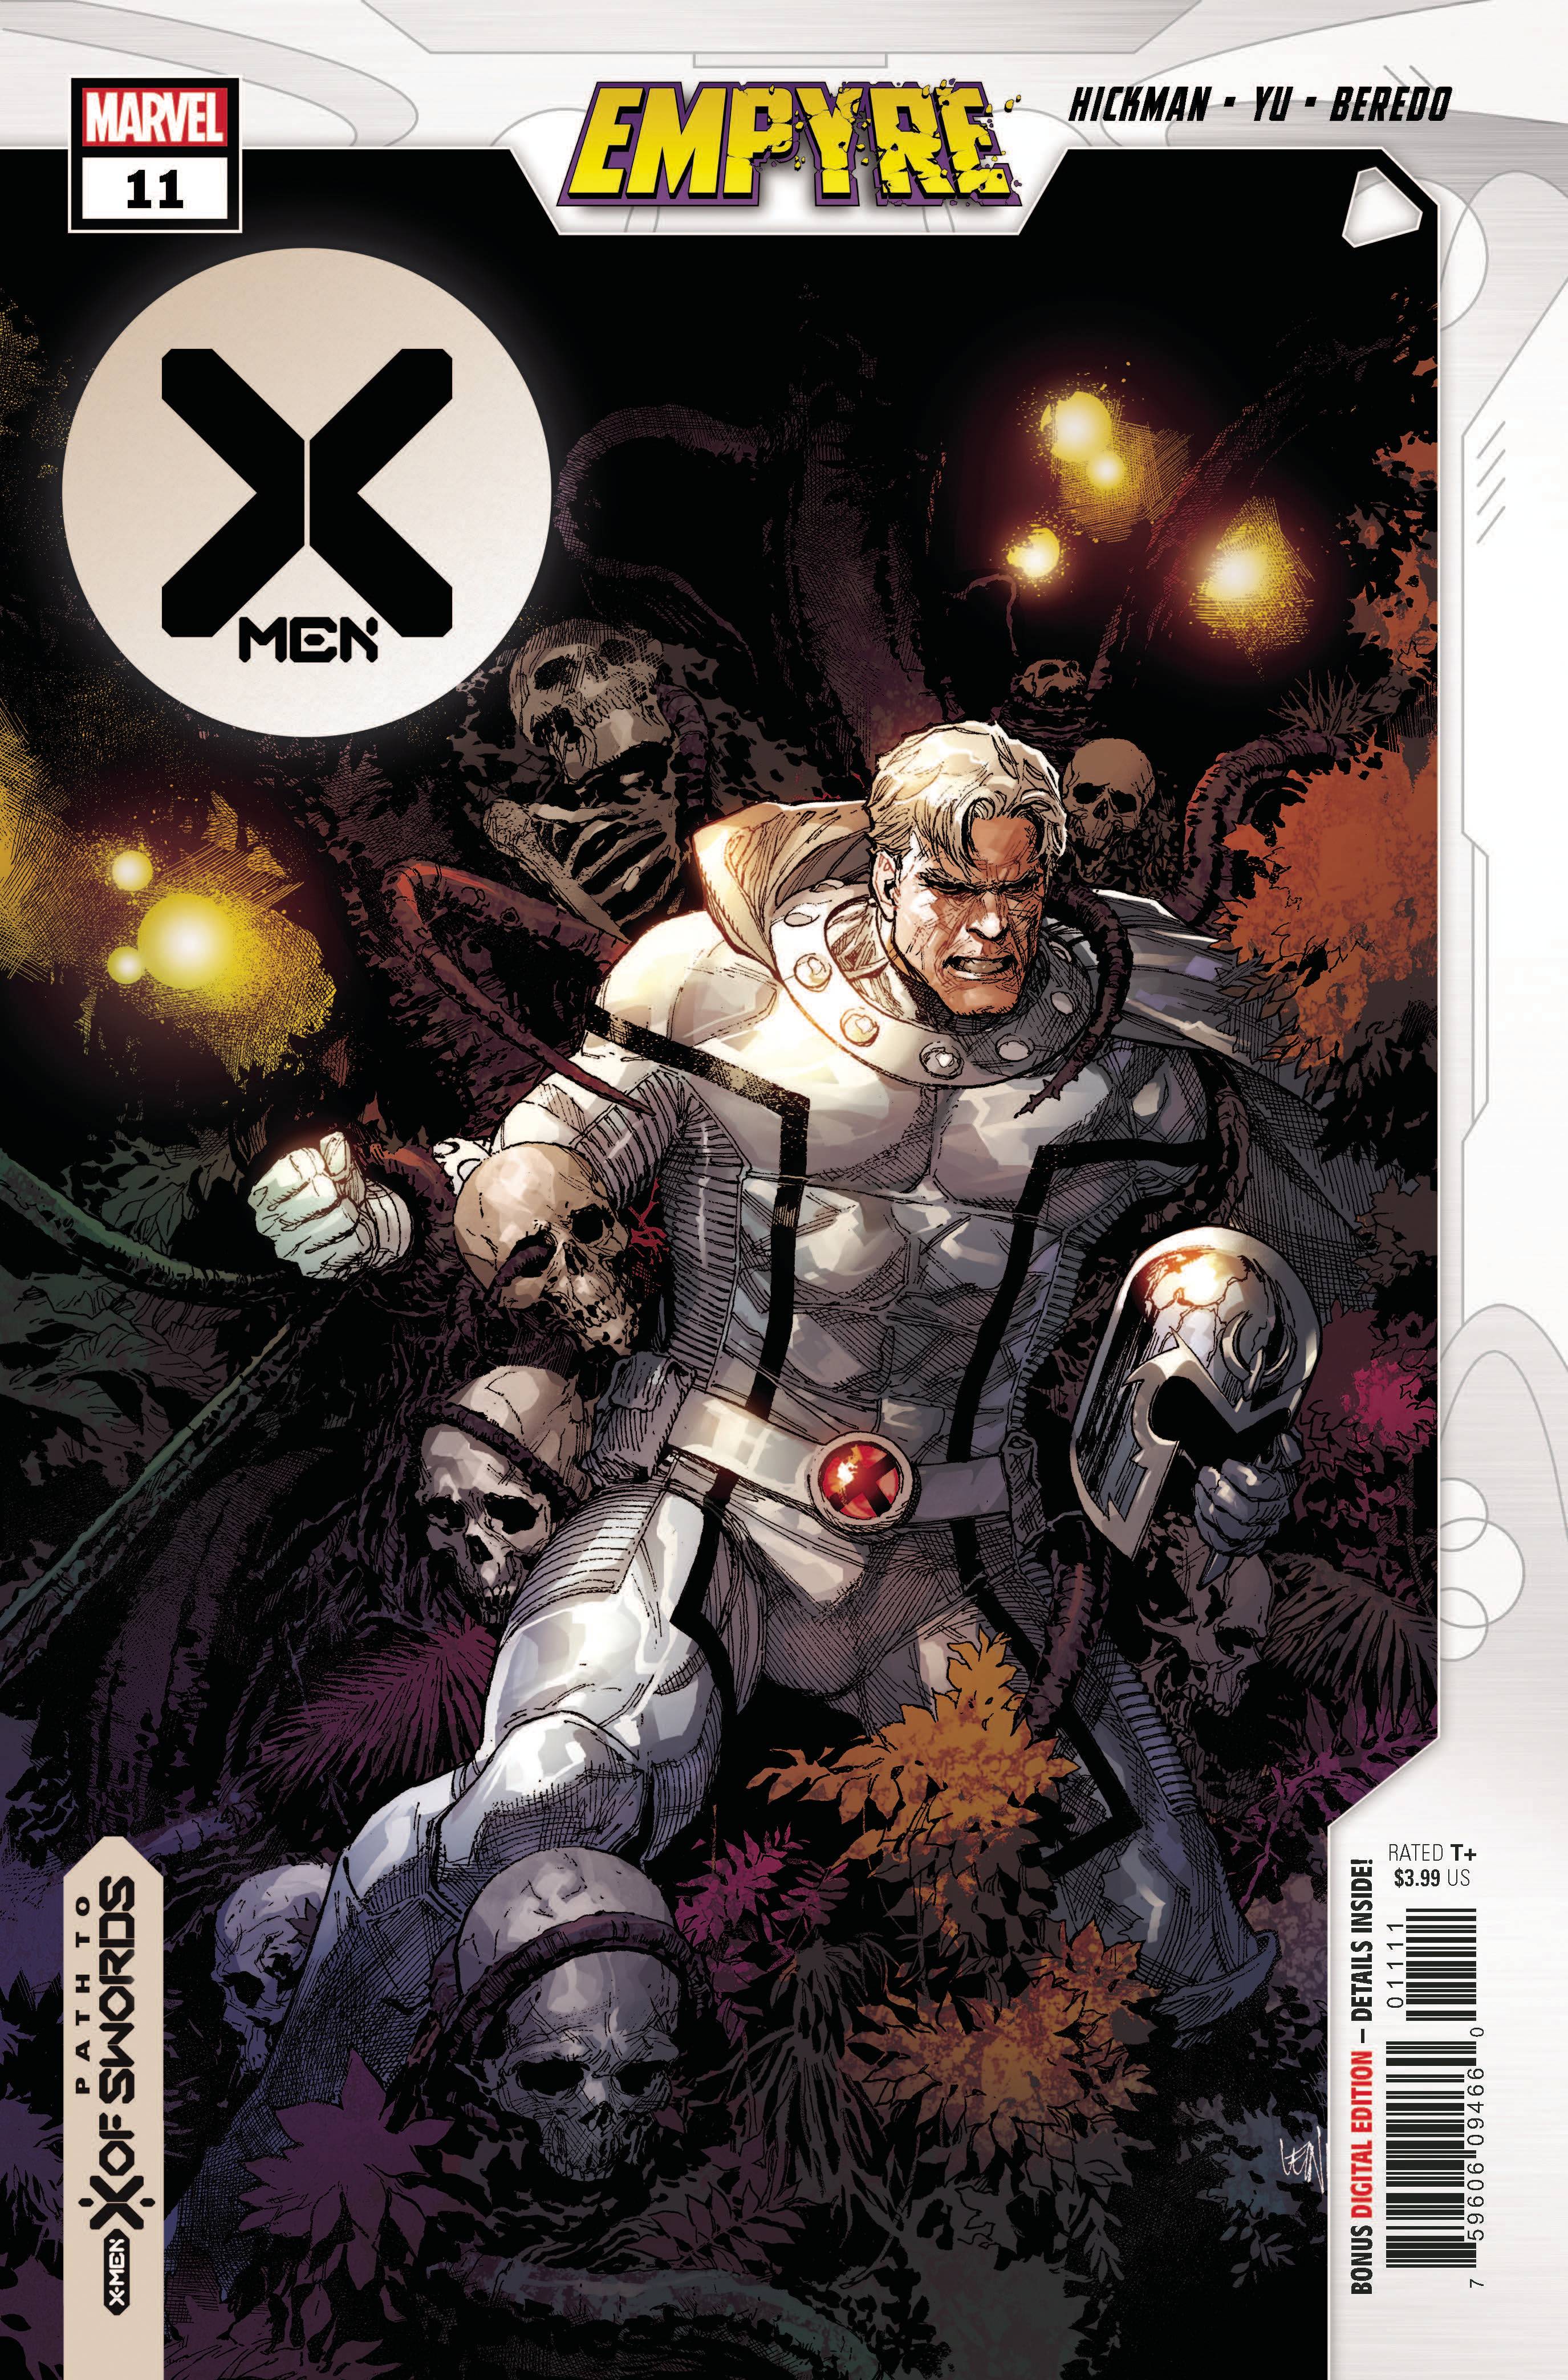 X-MEN #11 EMP | Game Master's Emporium (The New GME)